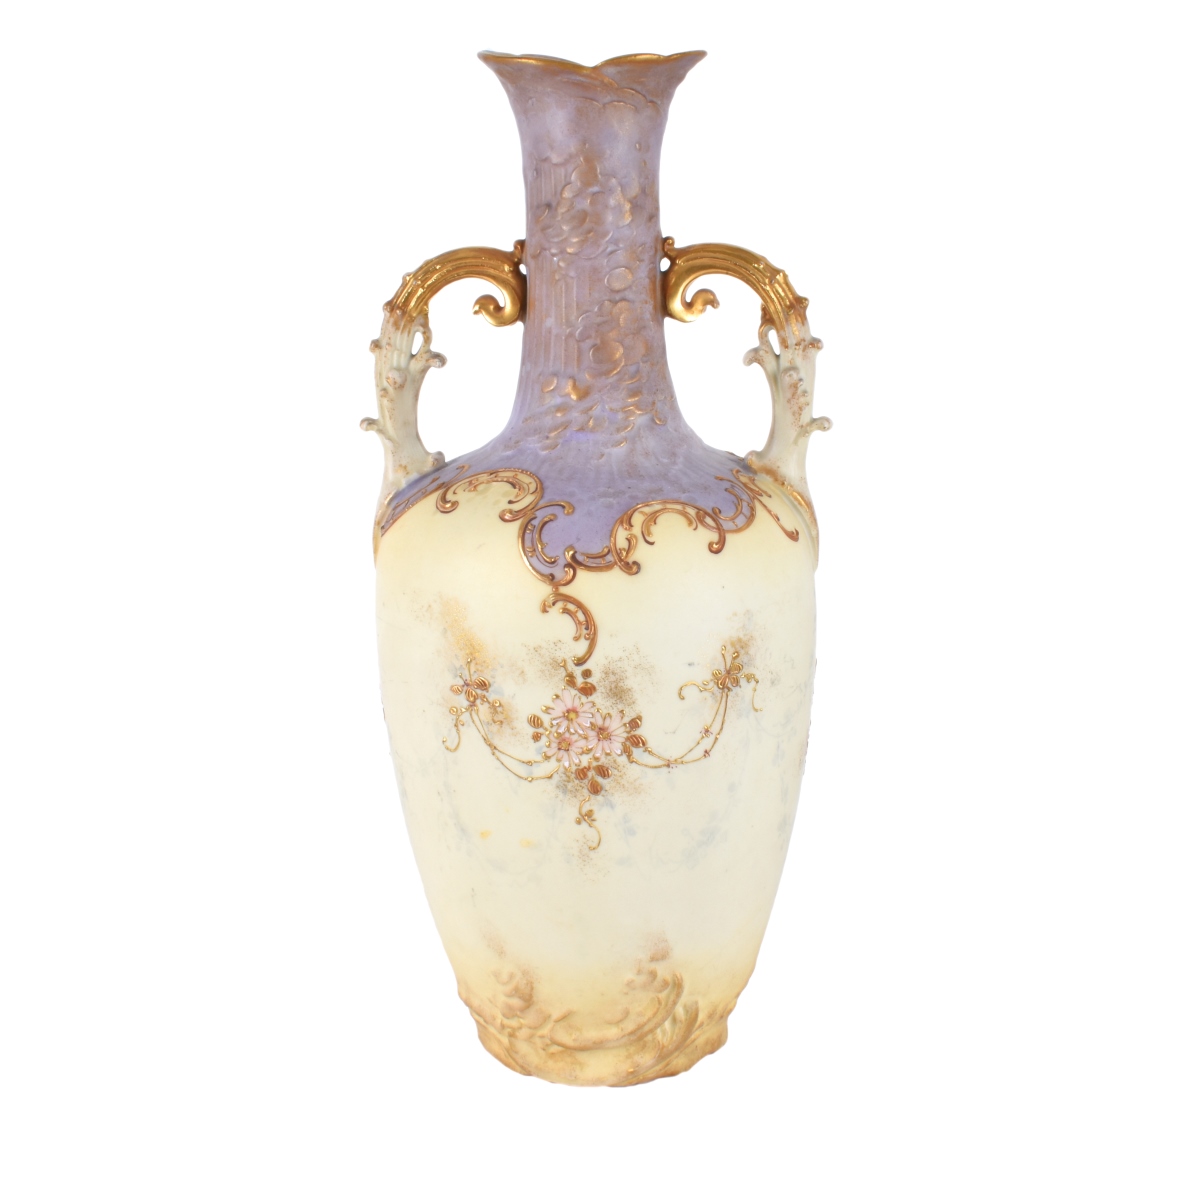 Turn Teplitz Floral Vase